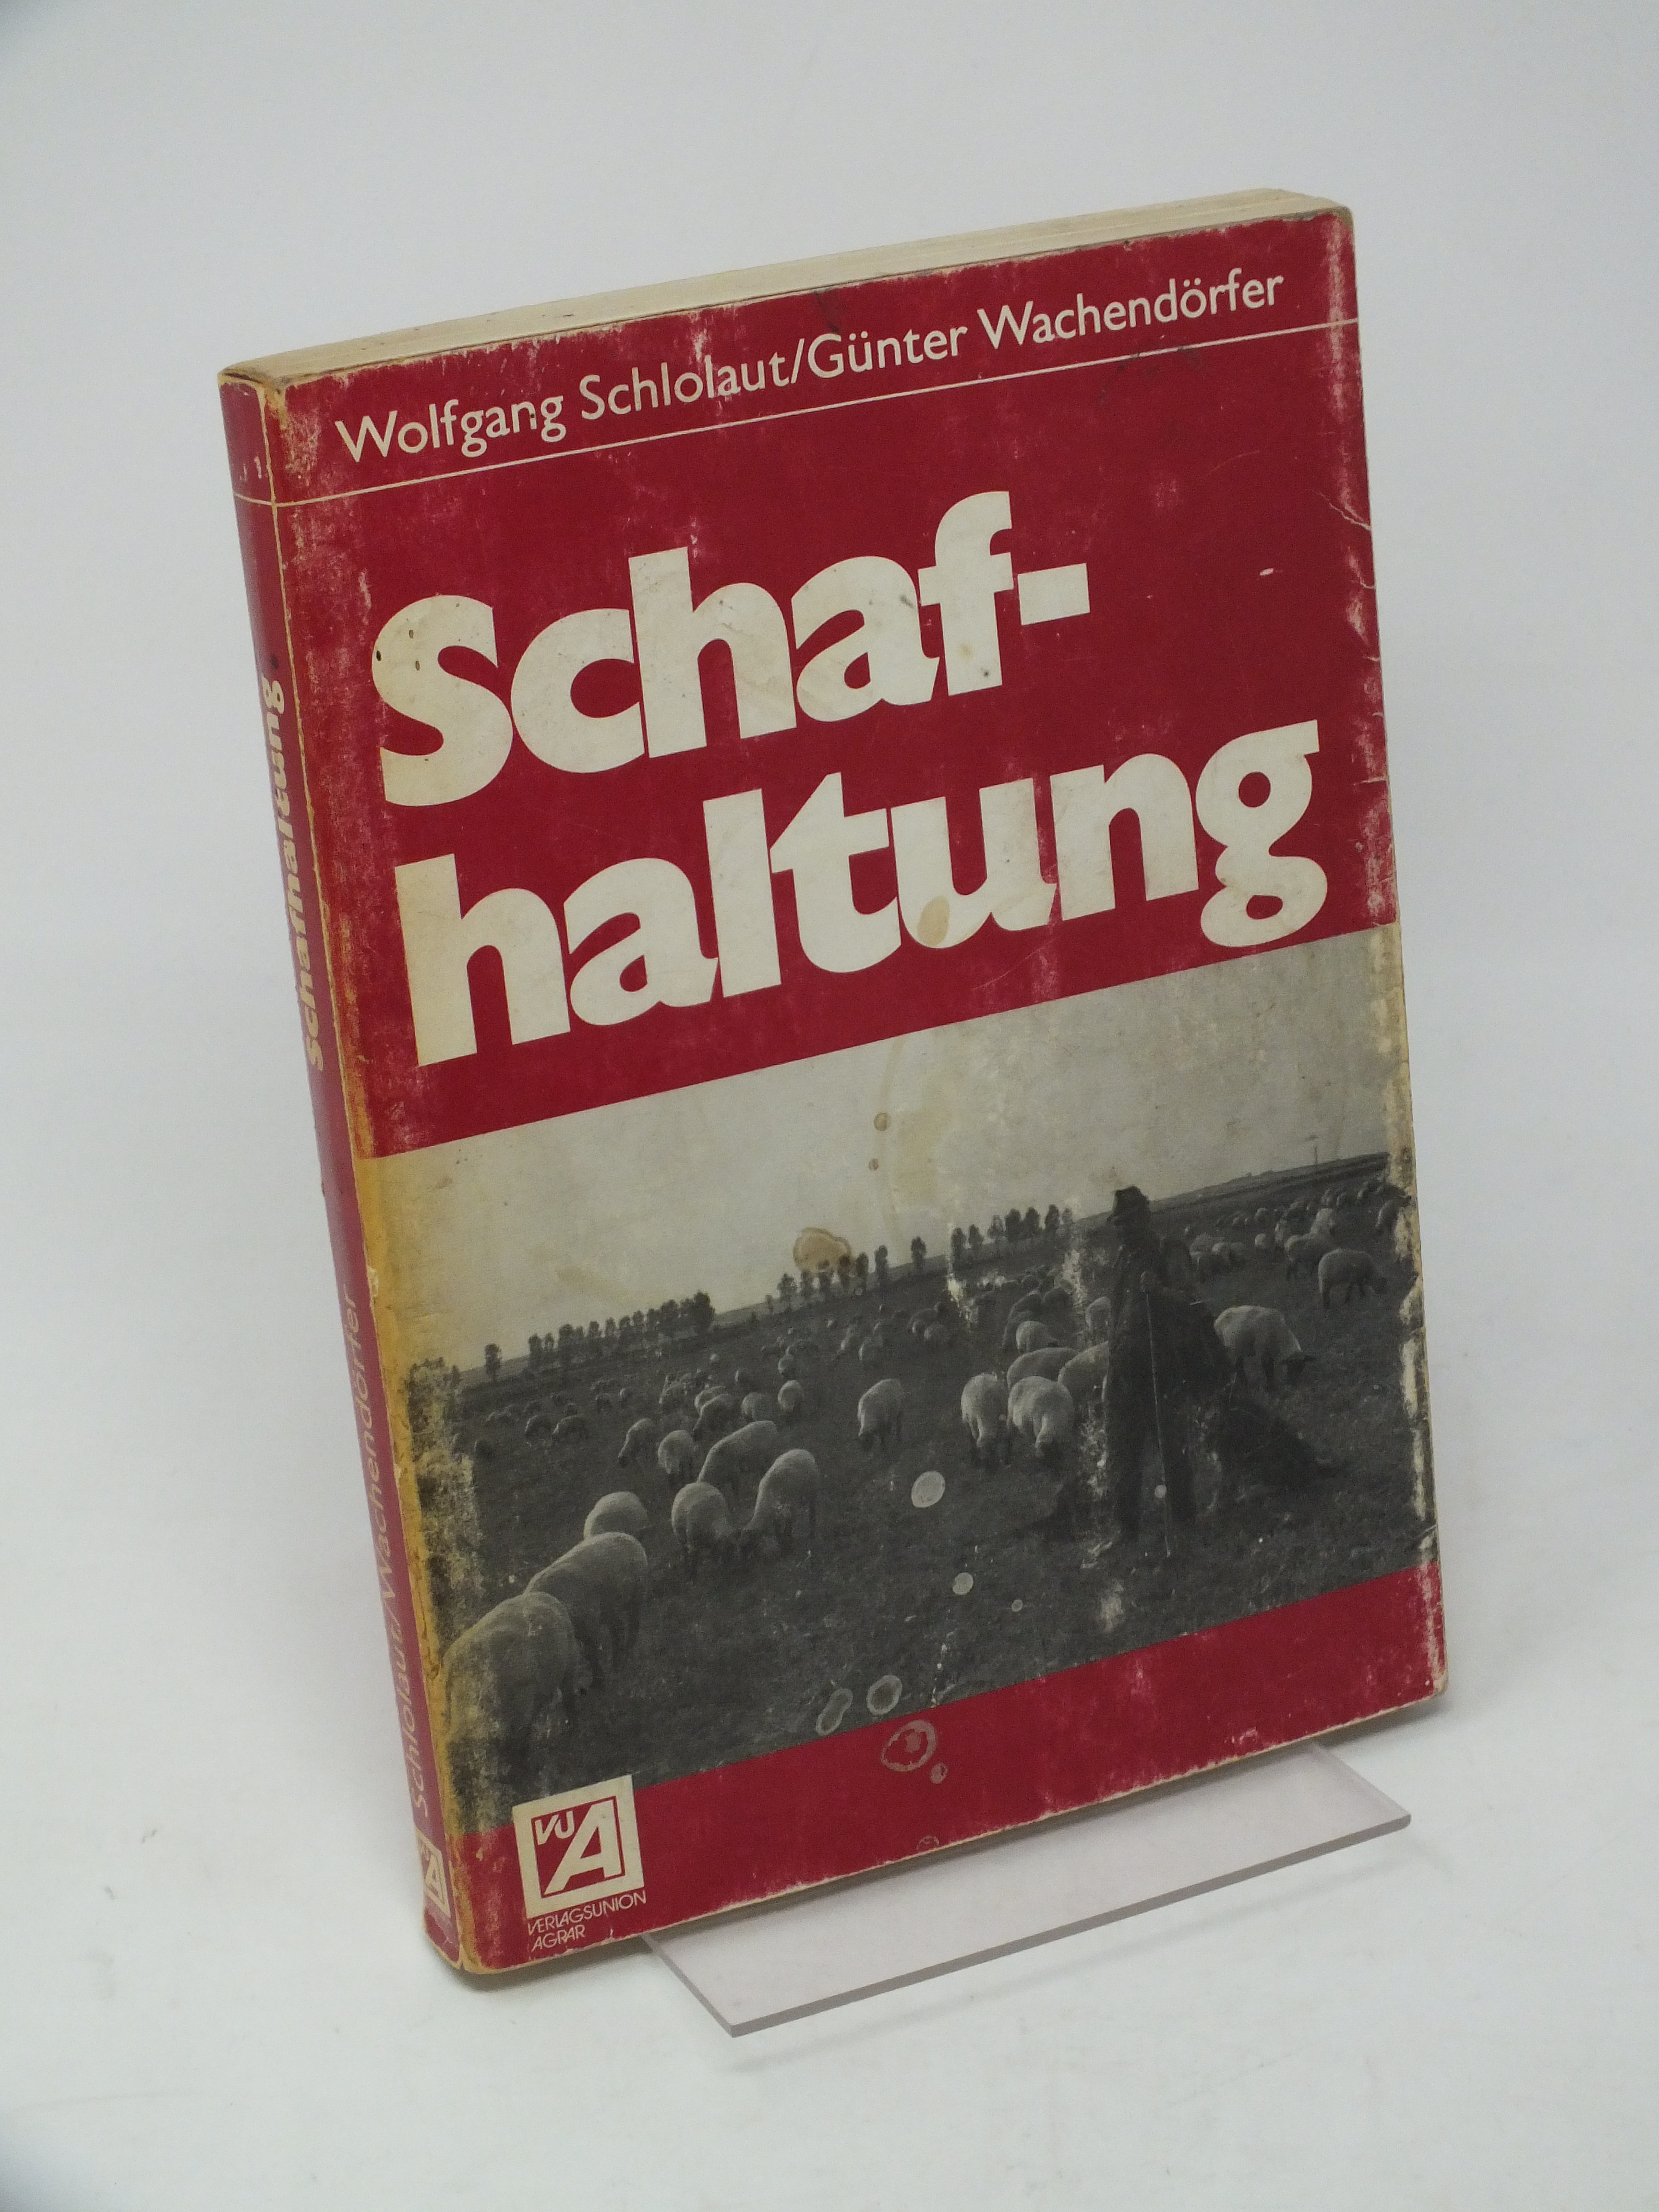 Schafhaltung - Schlolaut, Wolfgang / Wachend?rfer, G?nter